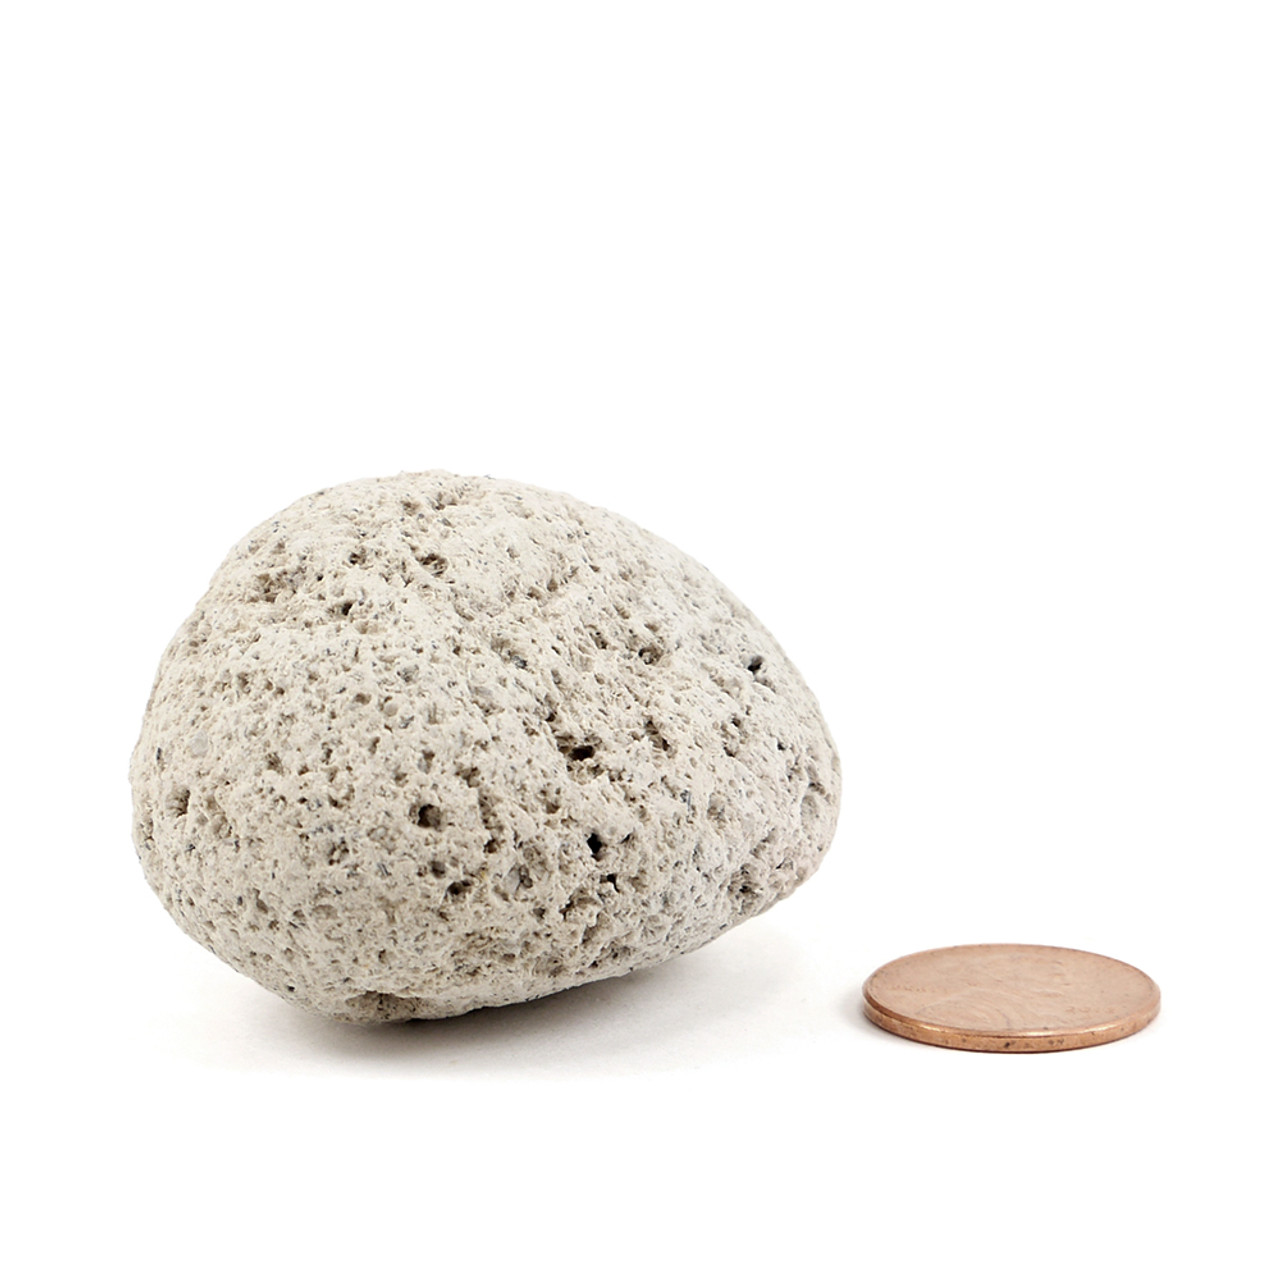 Pumice Stone - Small